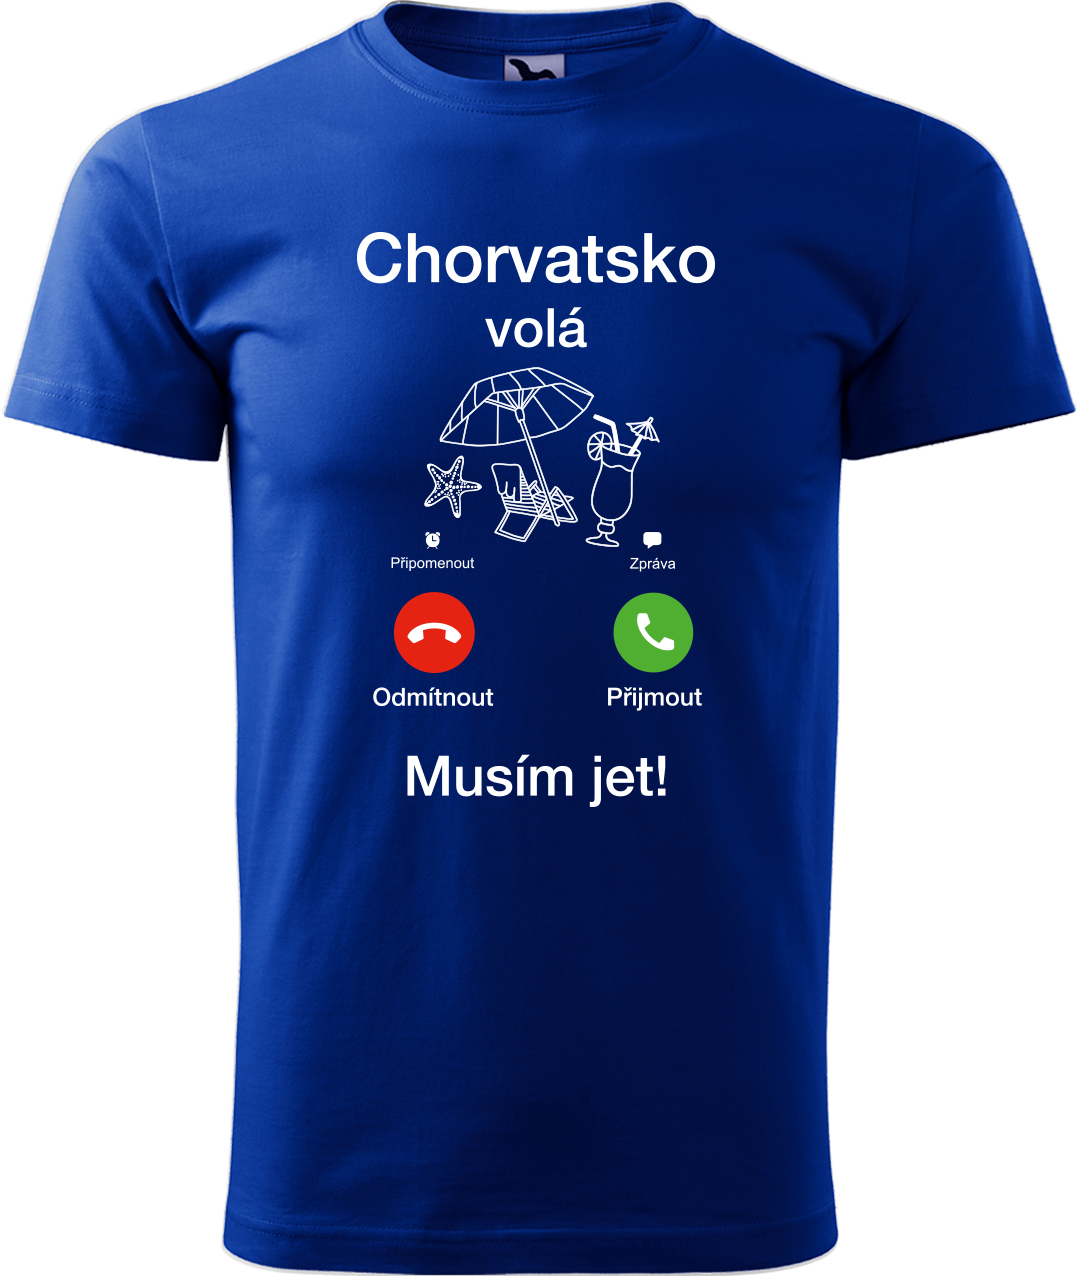 Pánské cestovatelské tričko - Chorvatsko volá - musím jet! Velikost: M, Barva: Královská modrá (05), Střih: pánský